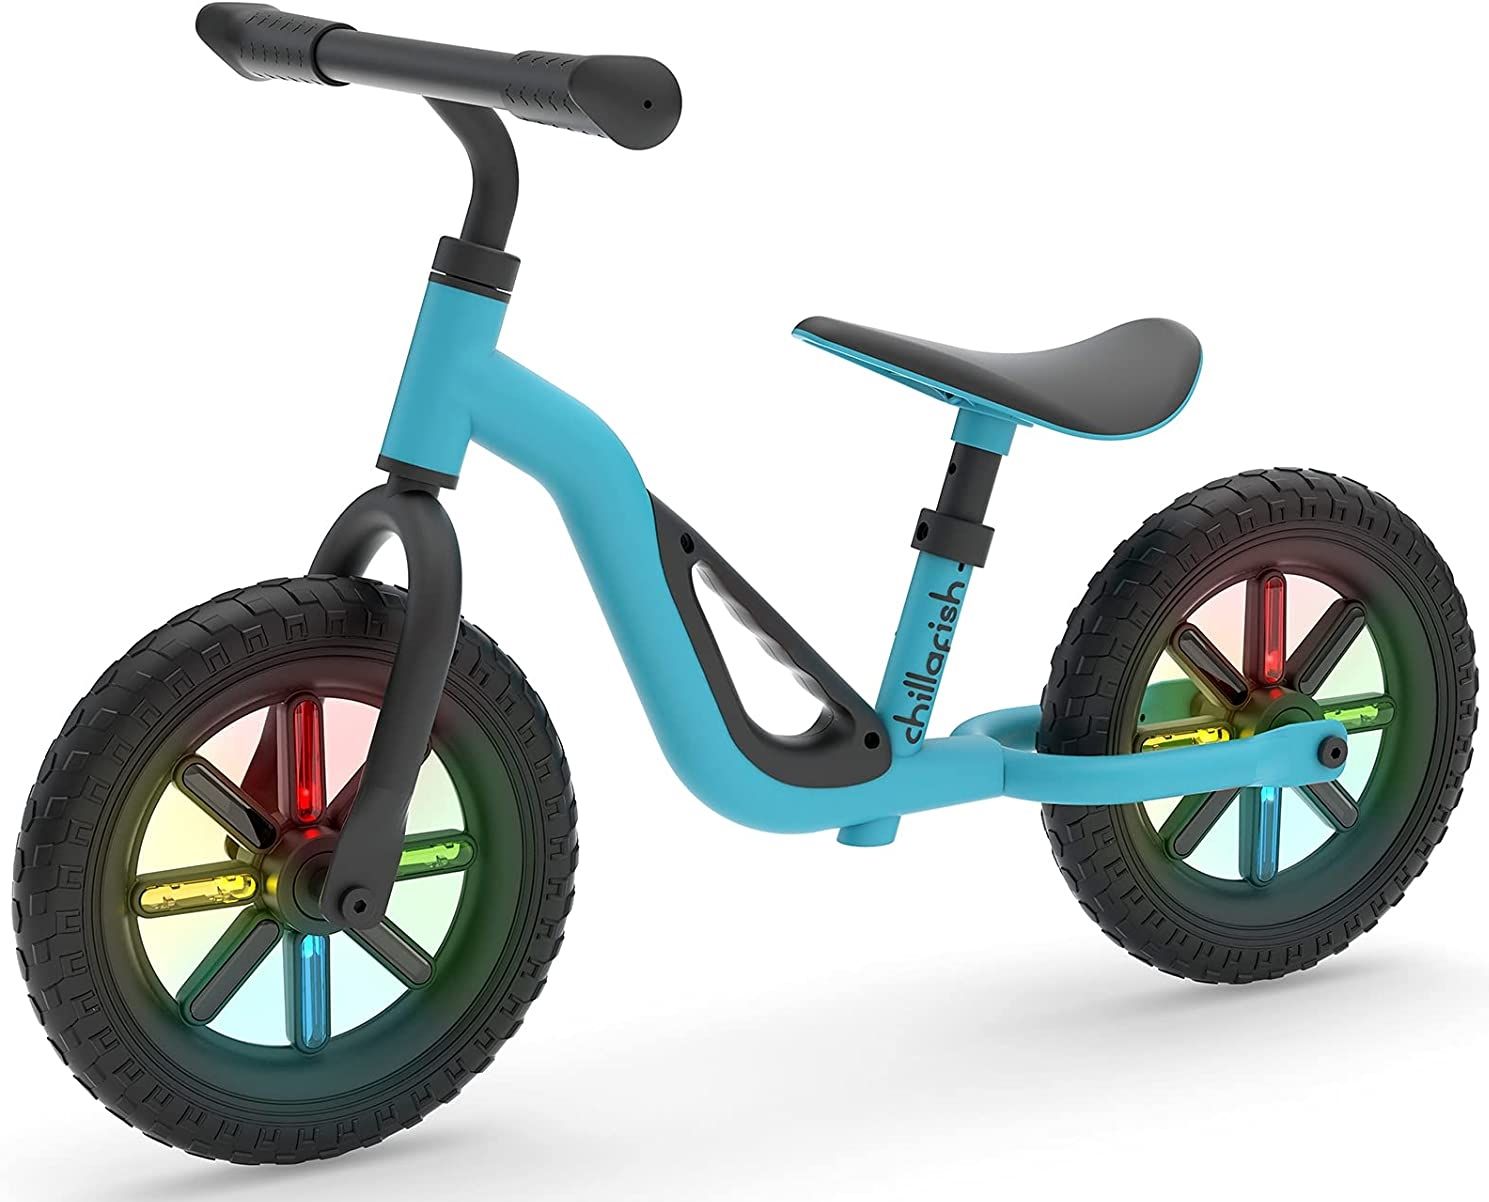 Bicicletă albastră de echilibru, fără pedale și reglabilă pe înălțime – Charlie Glow albastră poza 2022